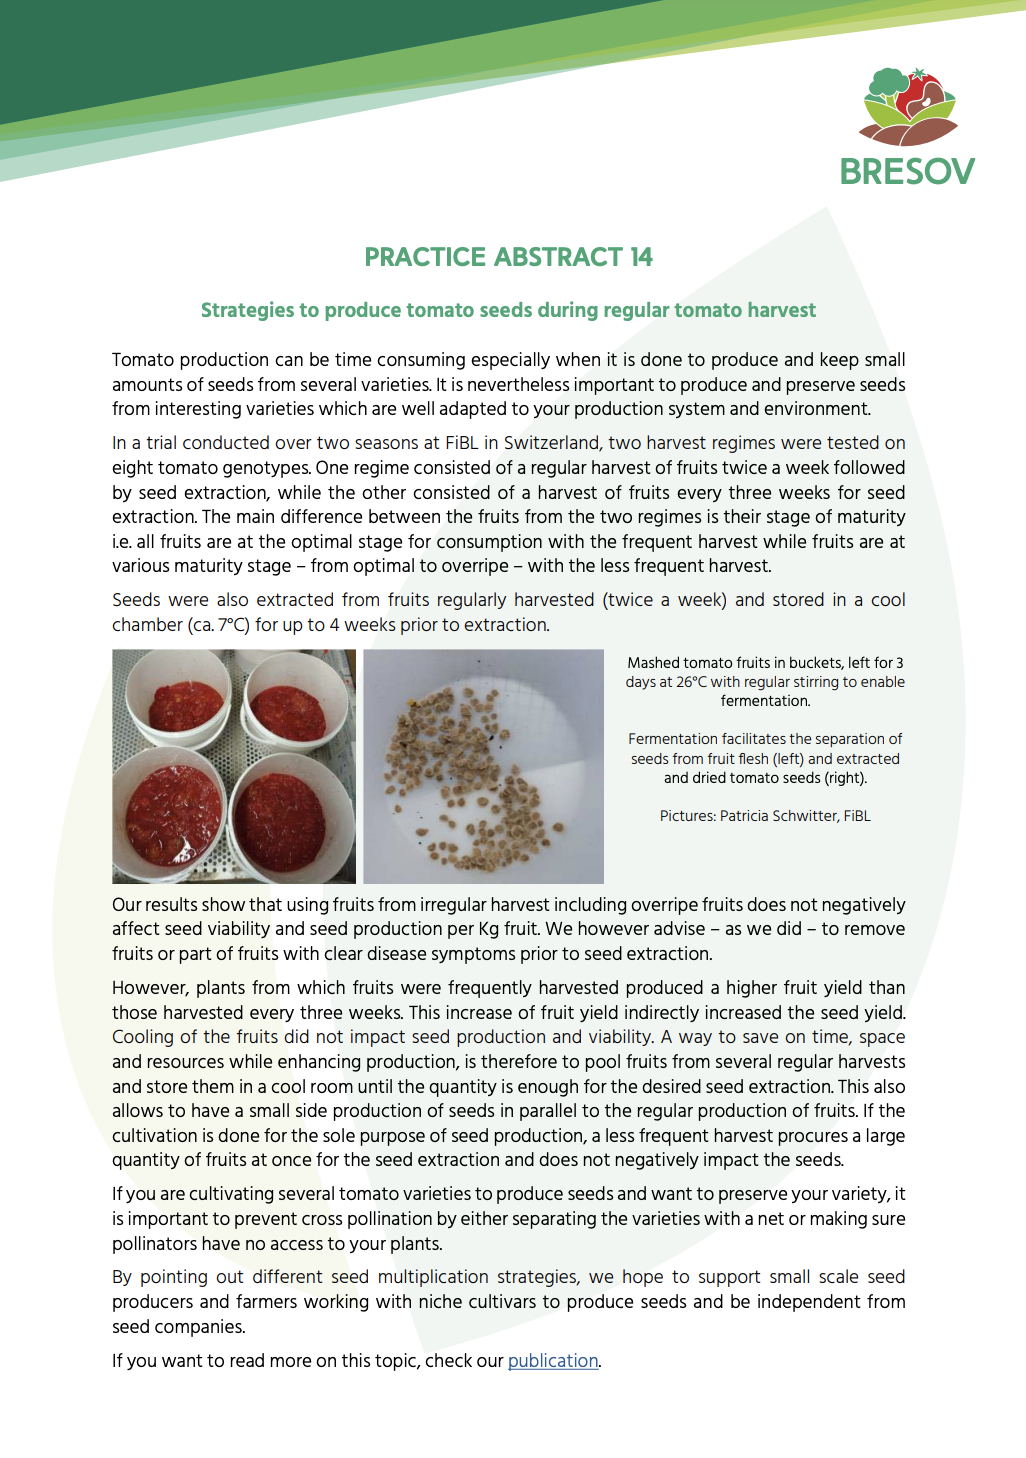 Strategie produkcji nasion pomidorów podczas regularnych zbiorów pomidorów (streszczenie praktyki BRESOV)